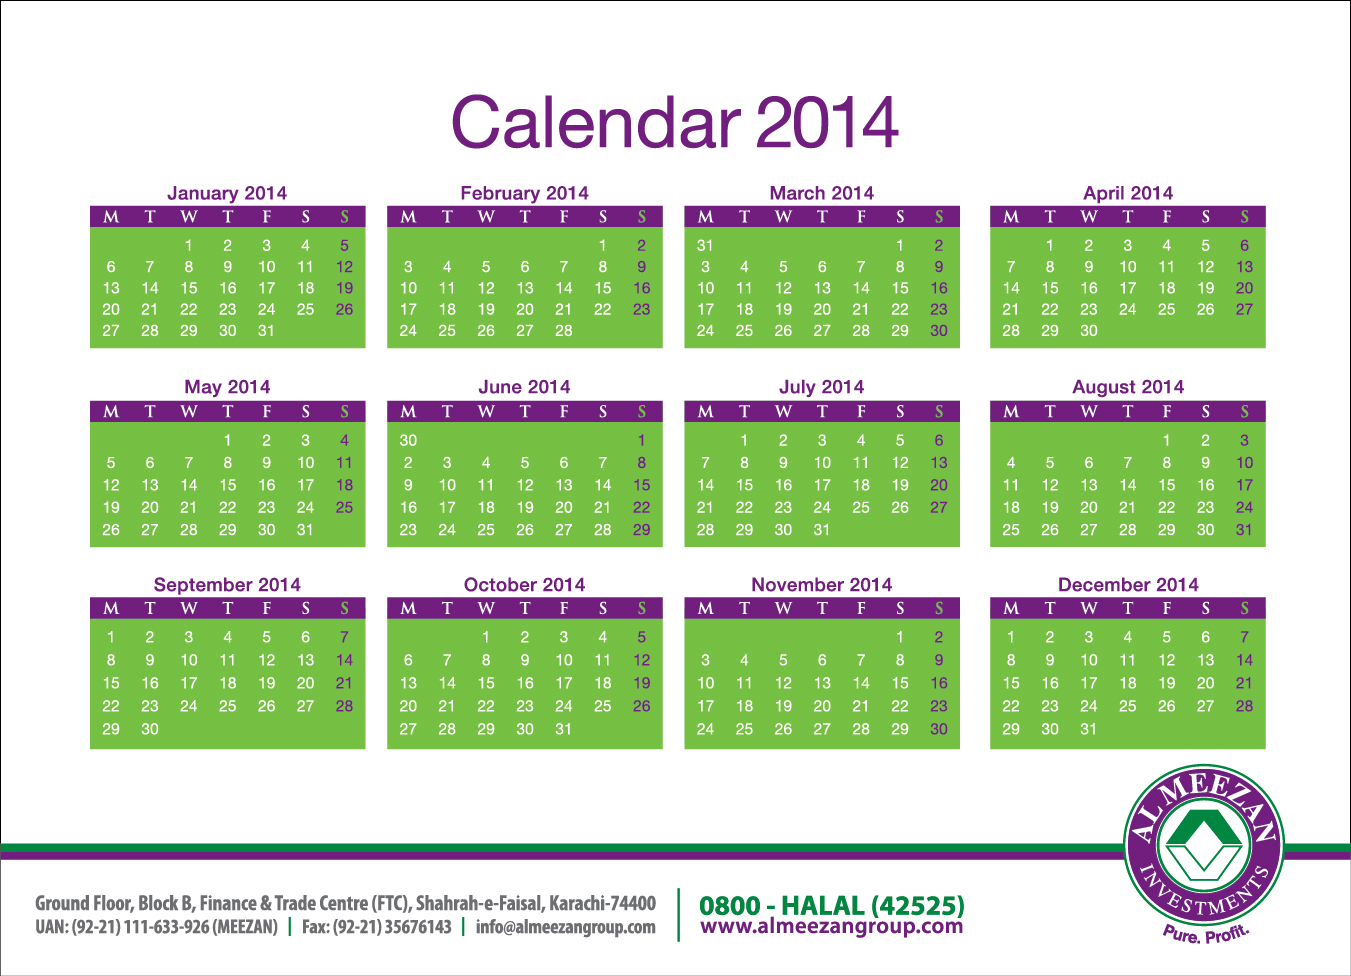 al-meezan-investments-table-calendar-2013-on-behance